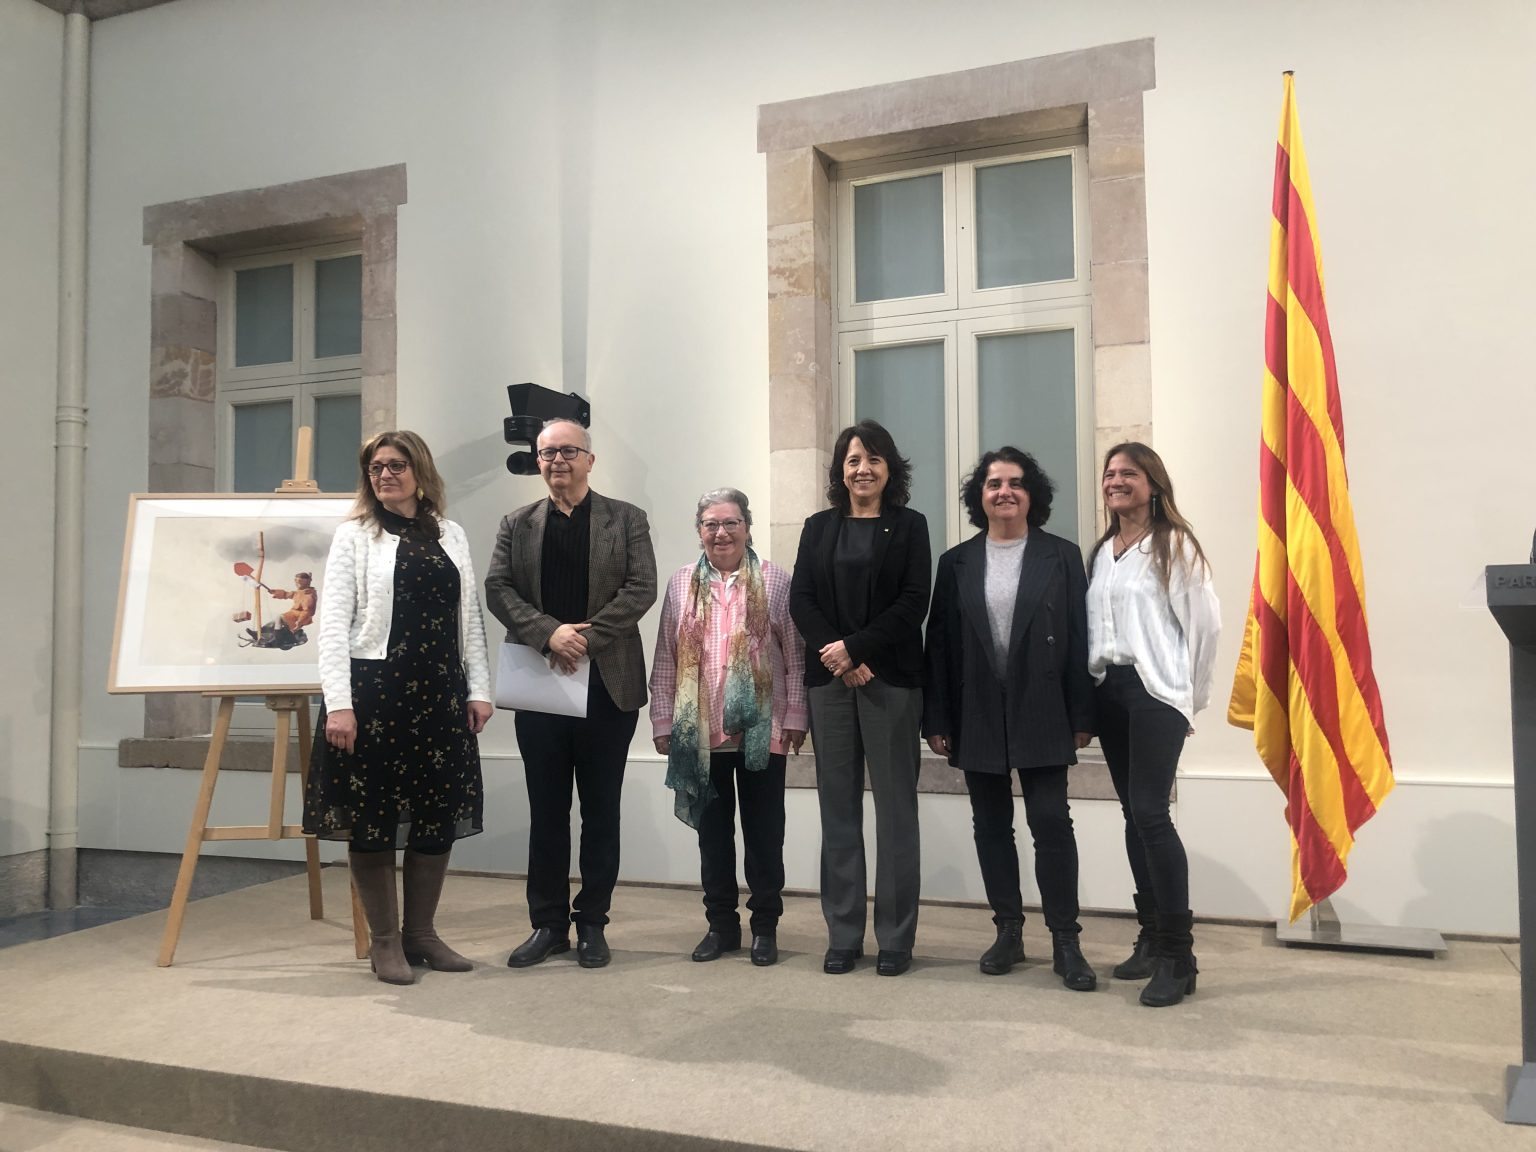 Recepció del premi Solidaritat al Parlament de Catalunya